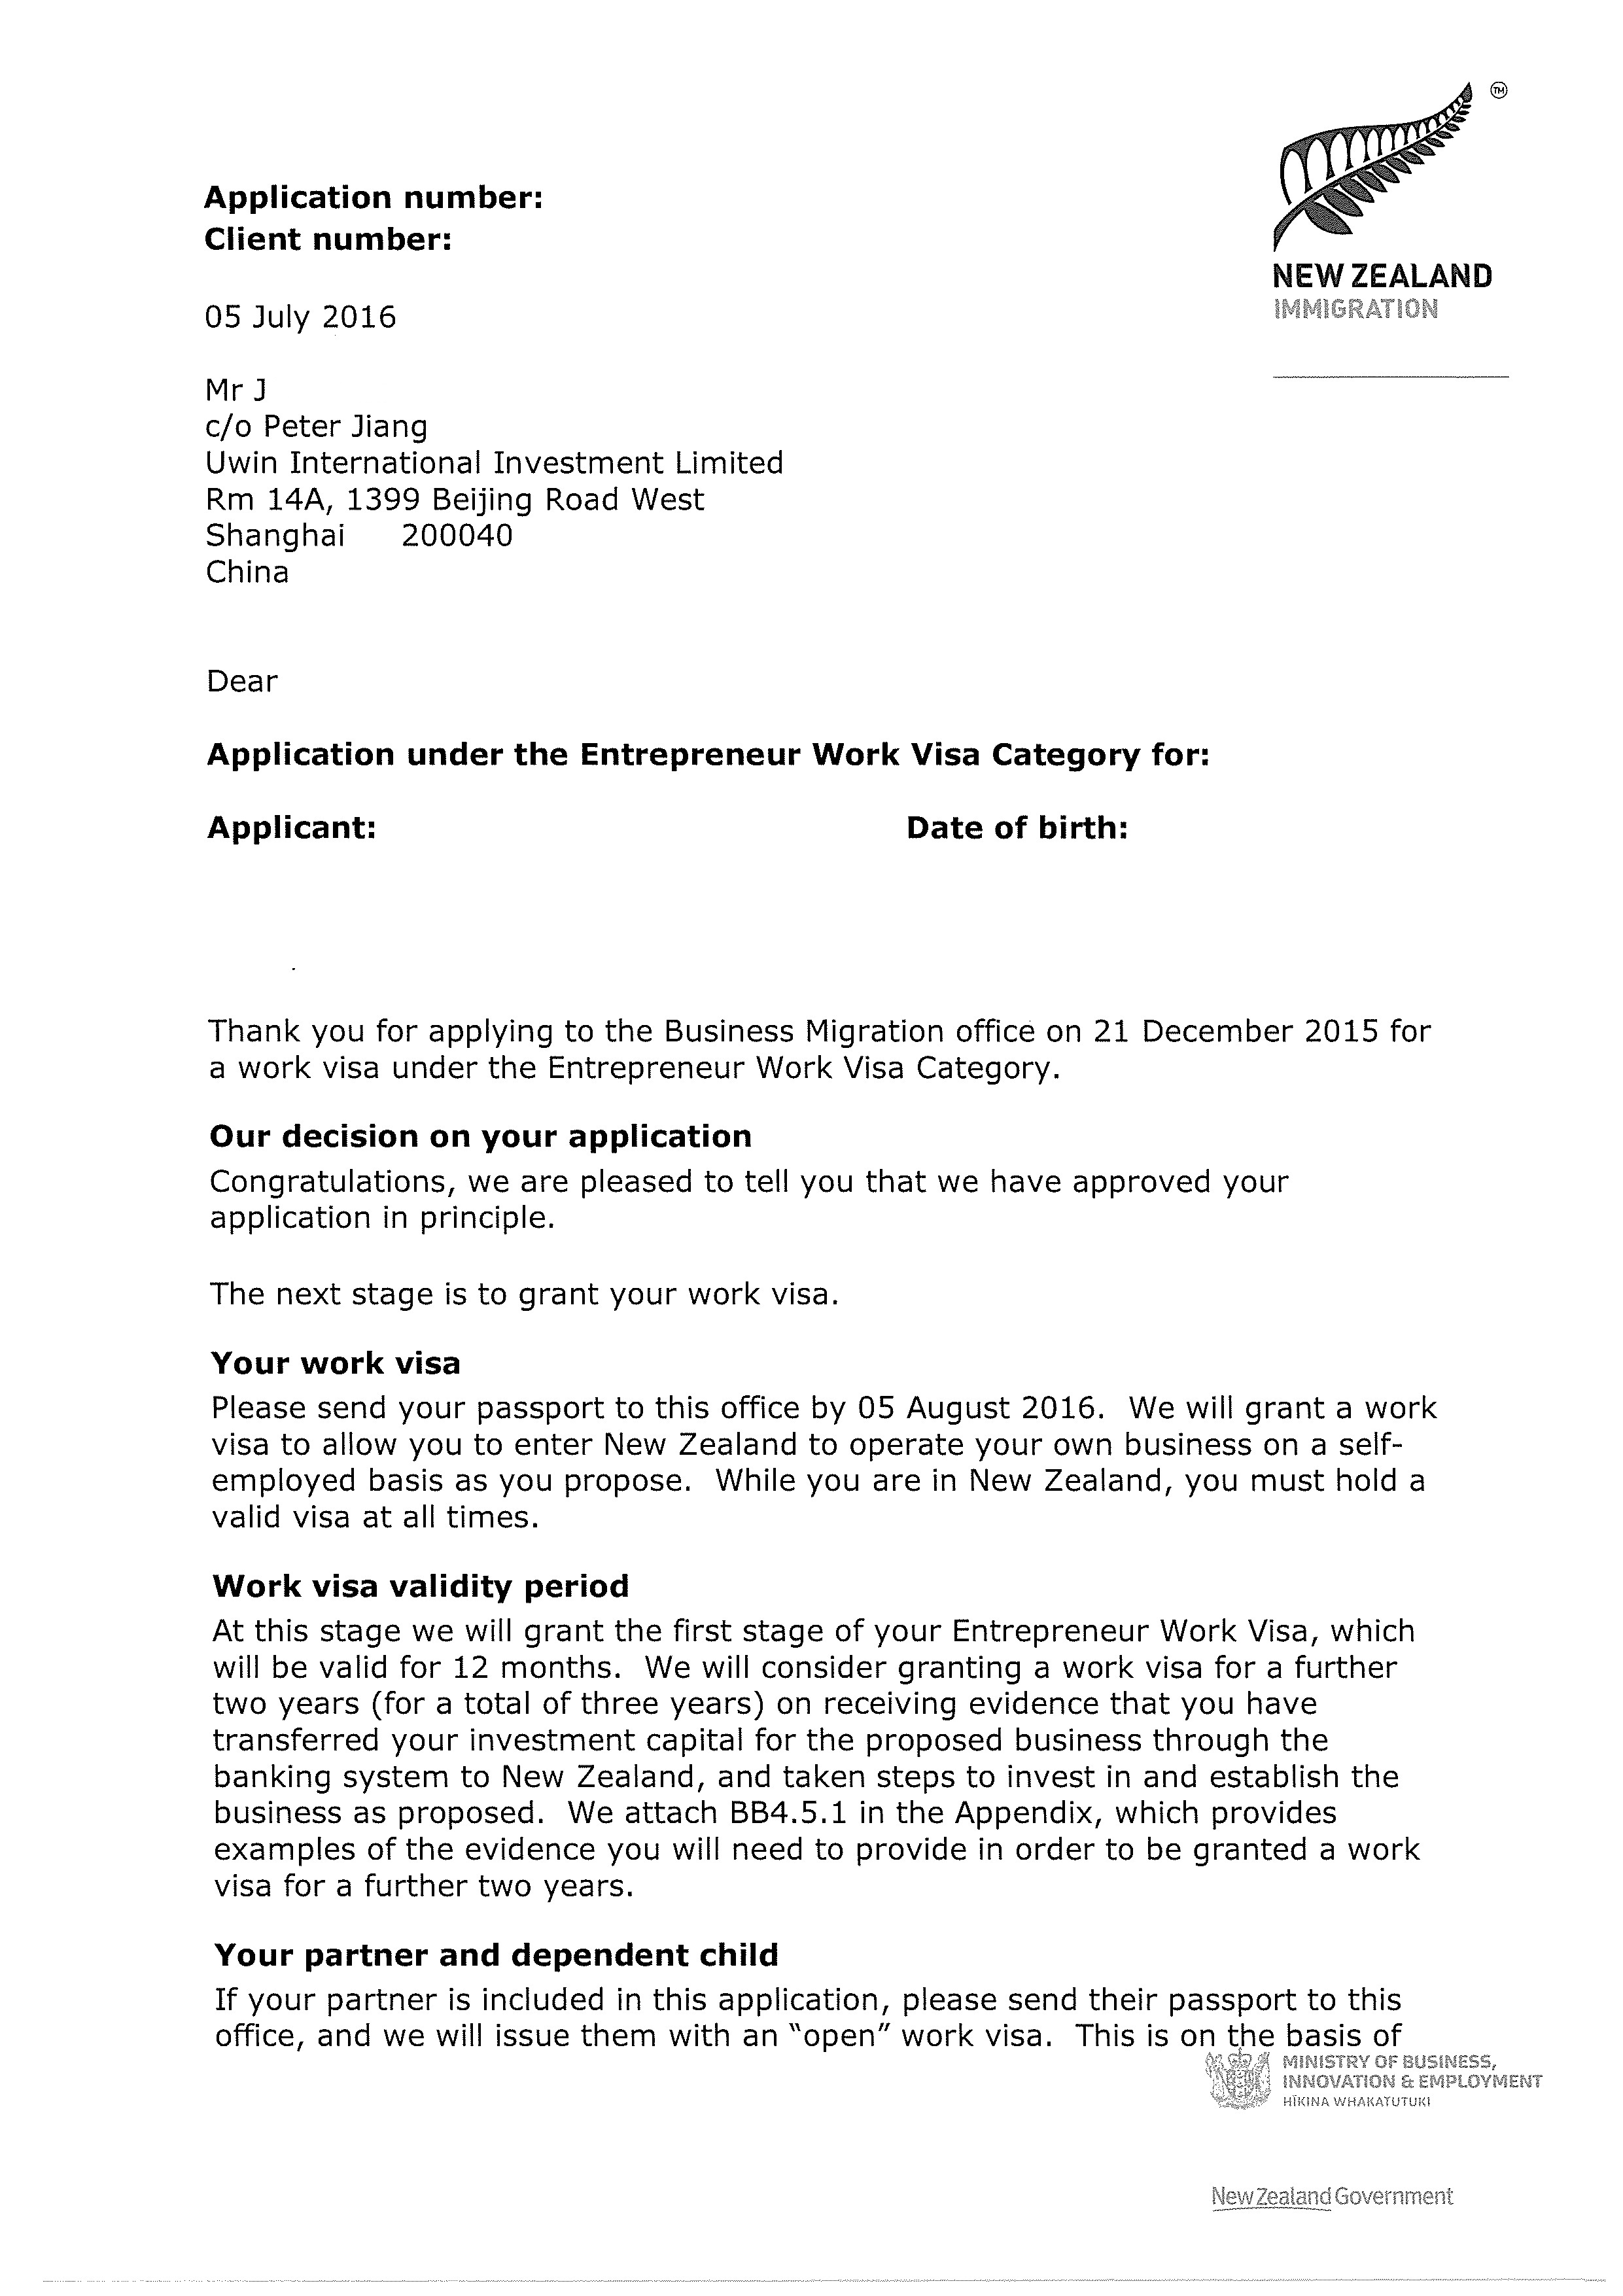 捷报！恭祝源盛国际客户江苏J先生喜获新西兰企业家工作签证批准信！